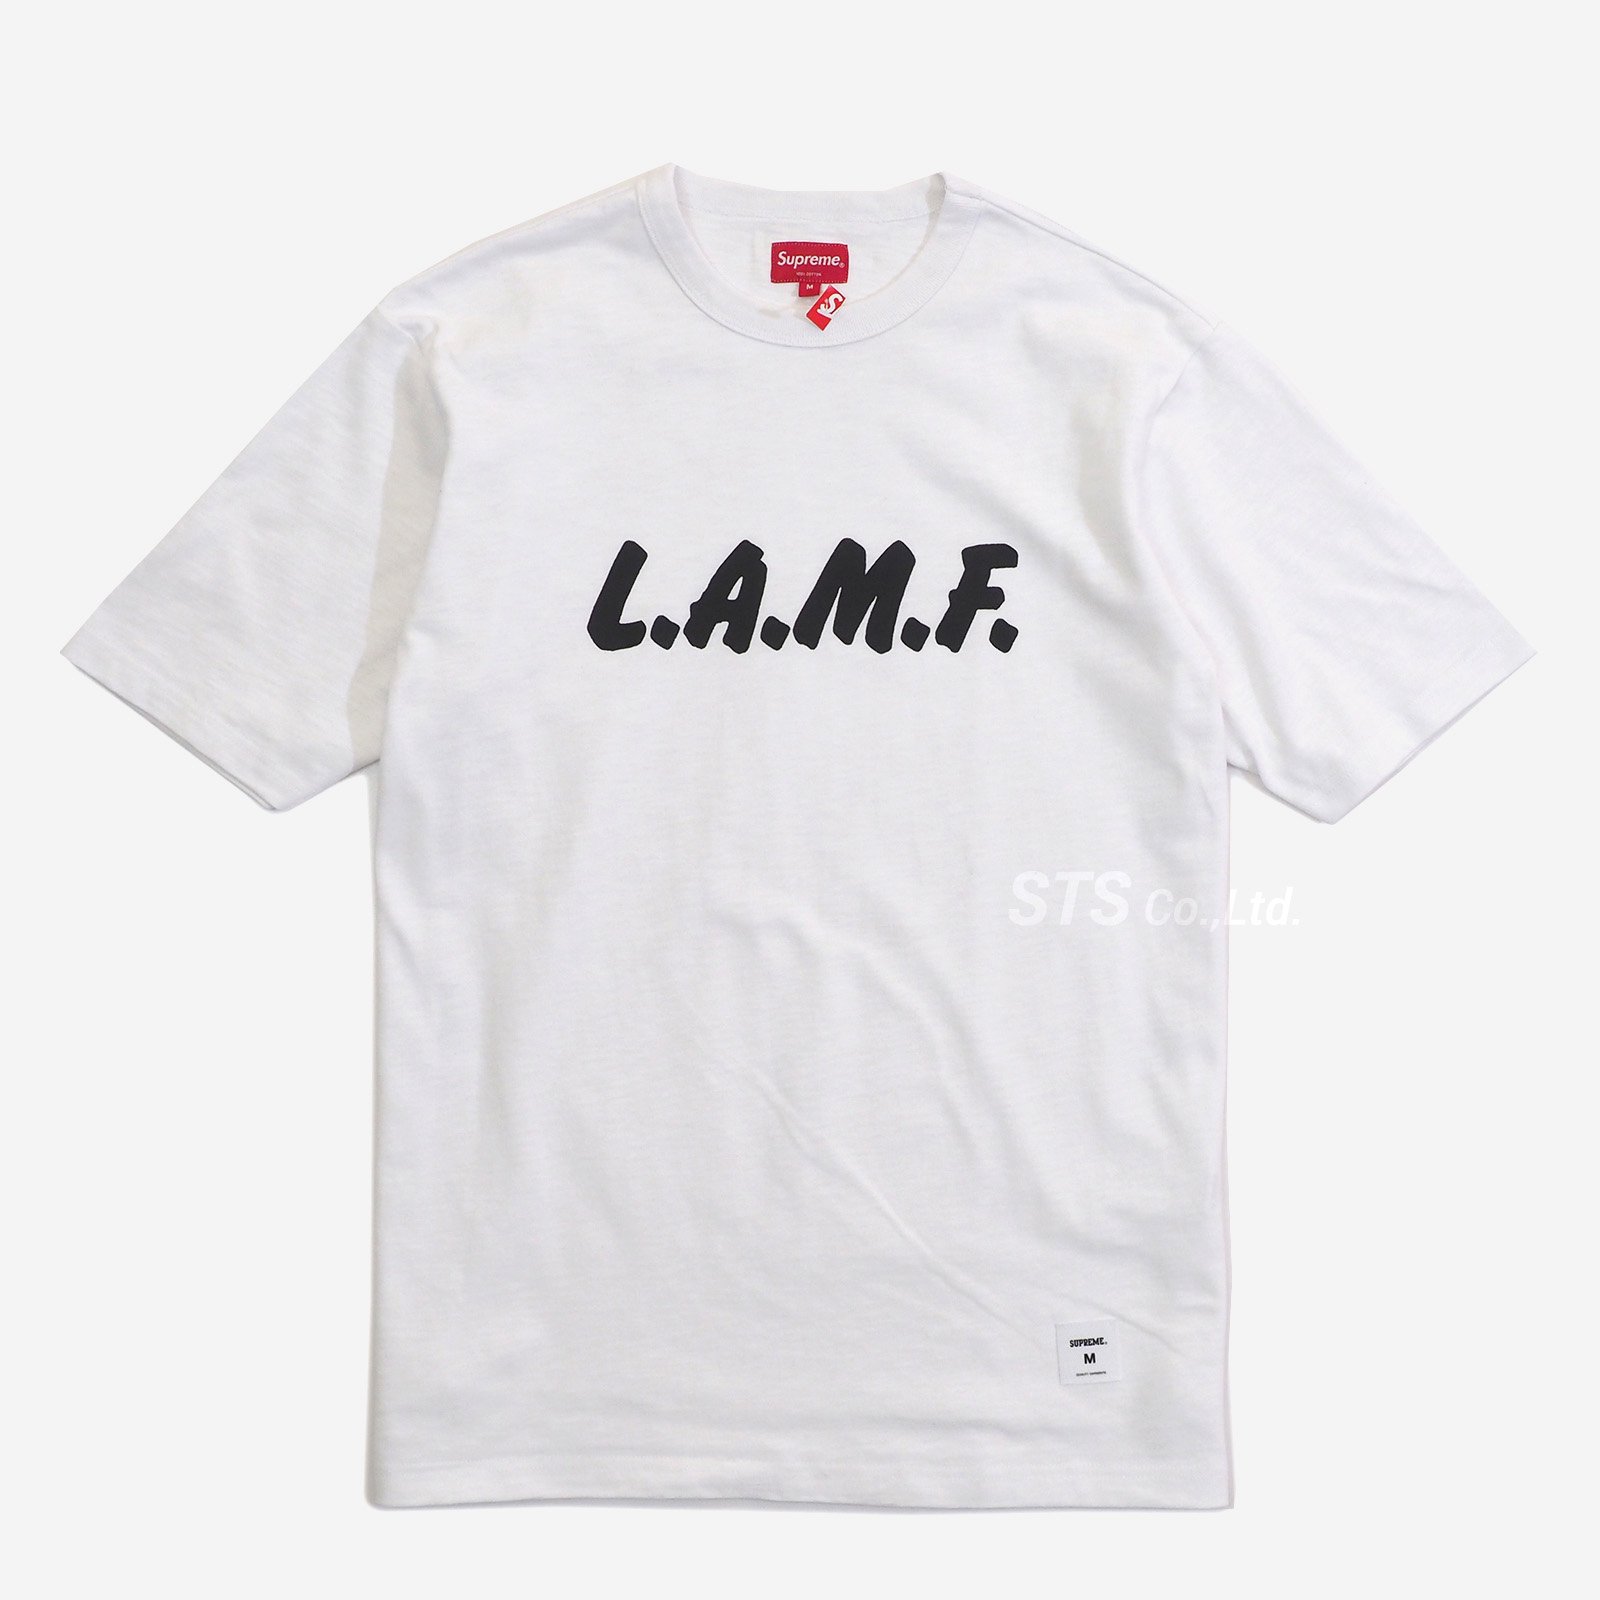 シュプリームSupreme□20AW LAMF S/S Top Tシャツ - Tシャツ